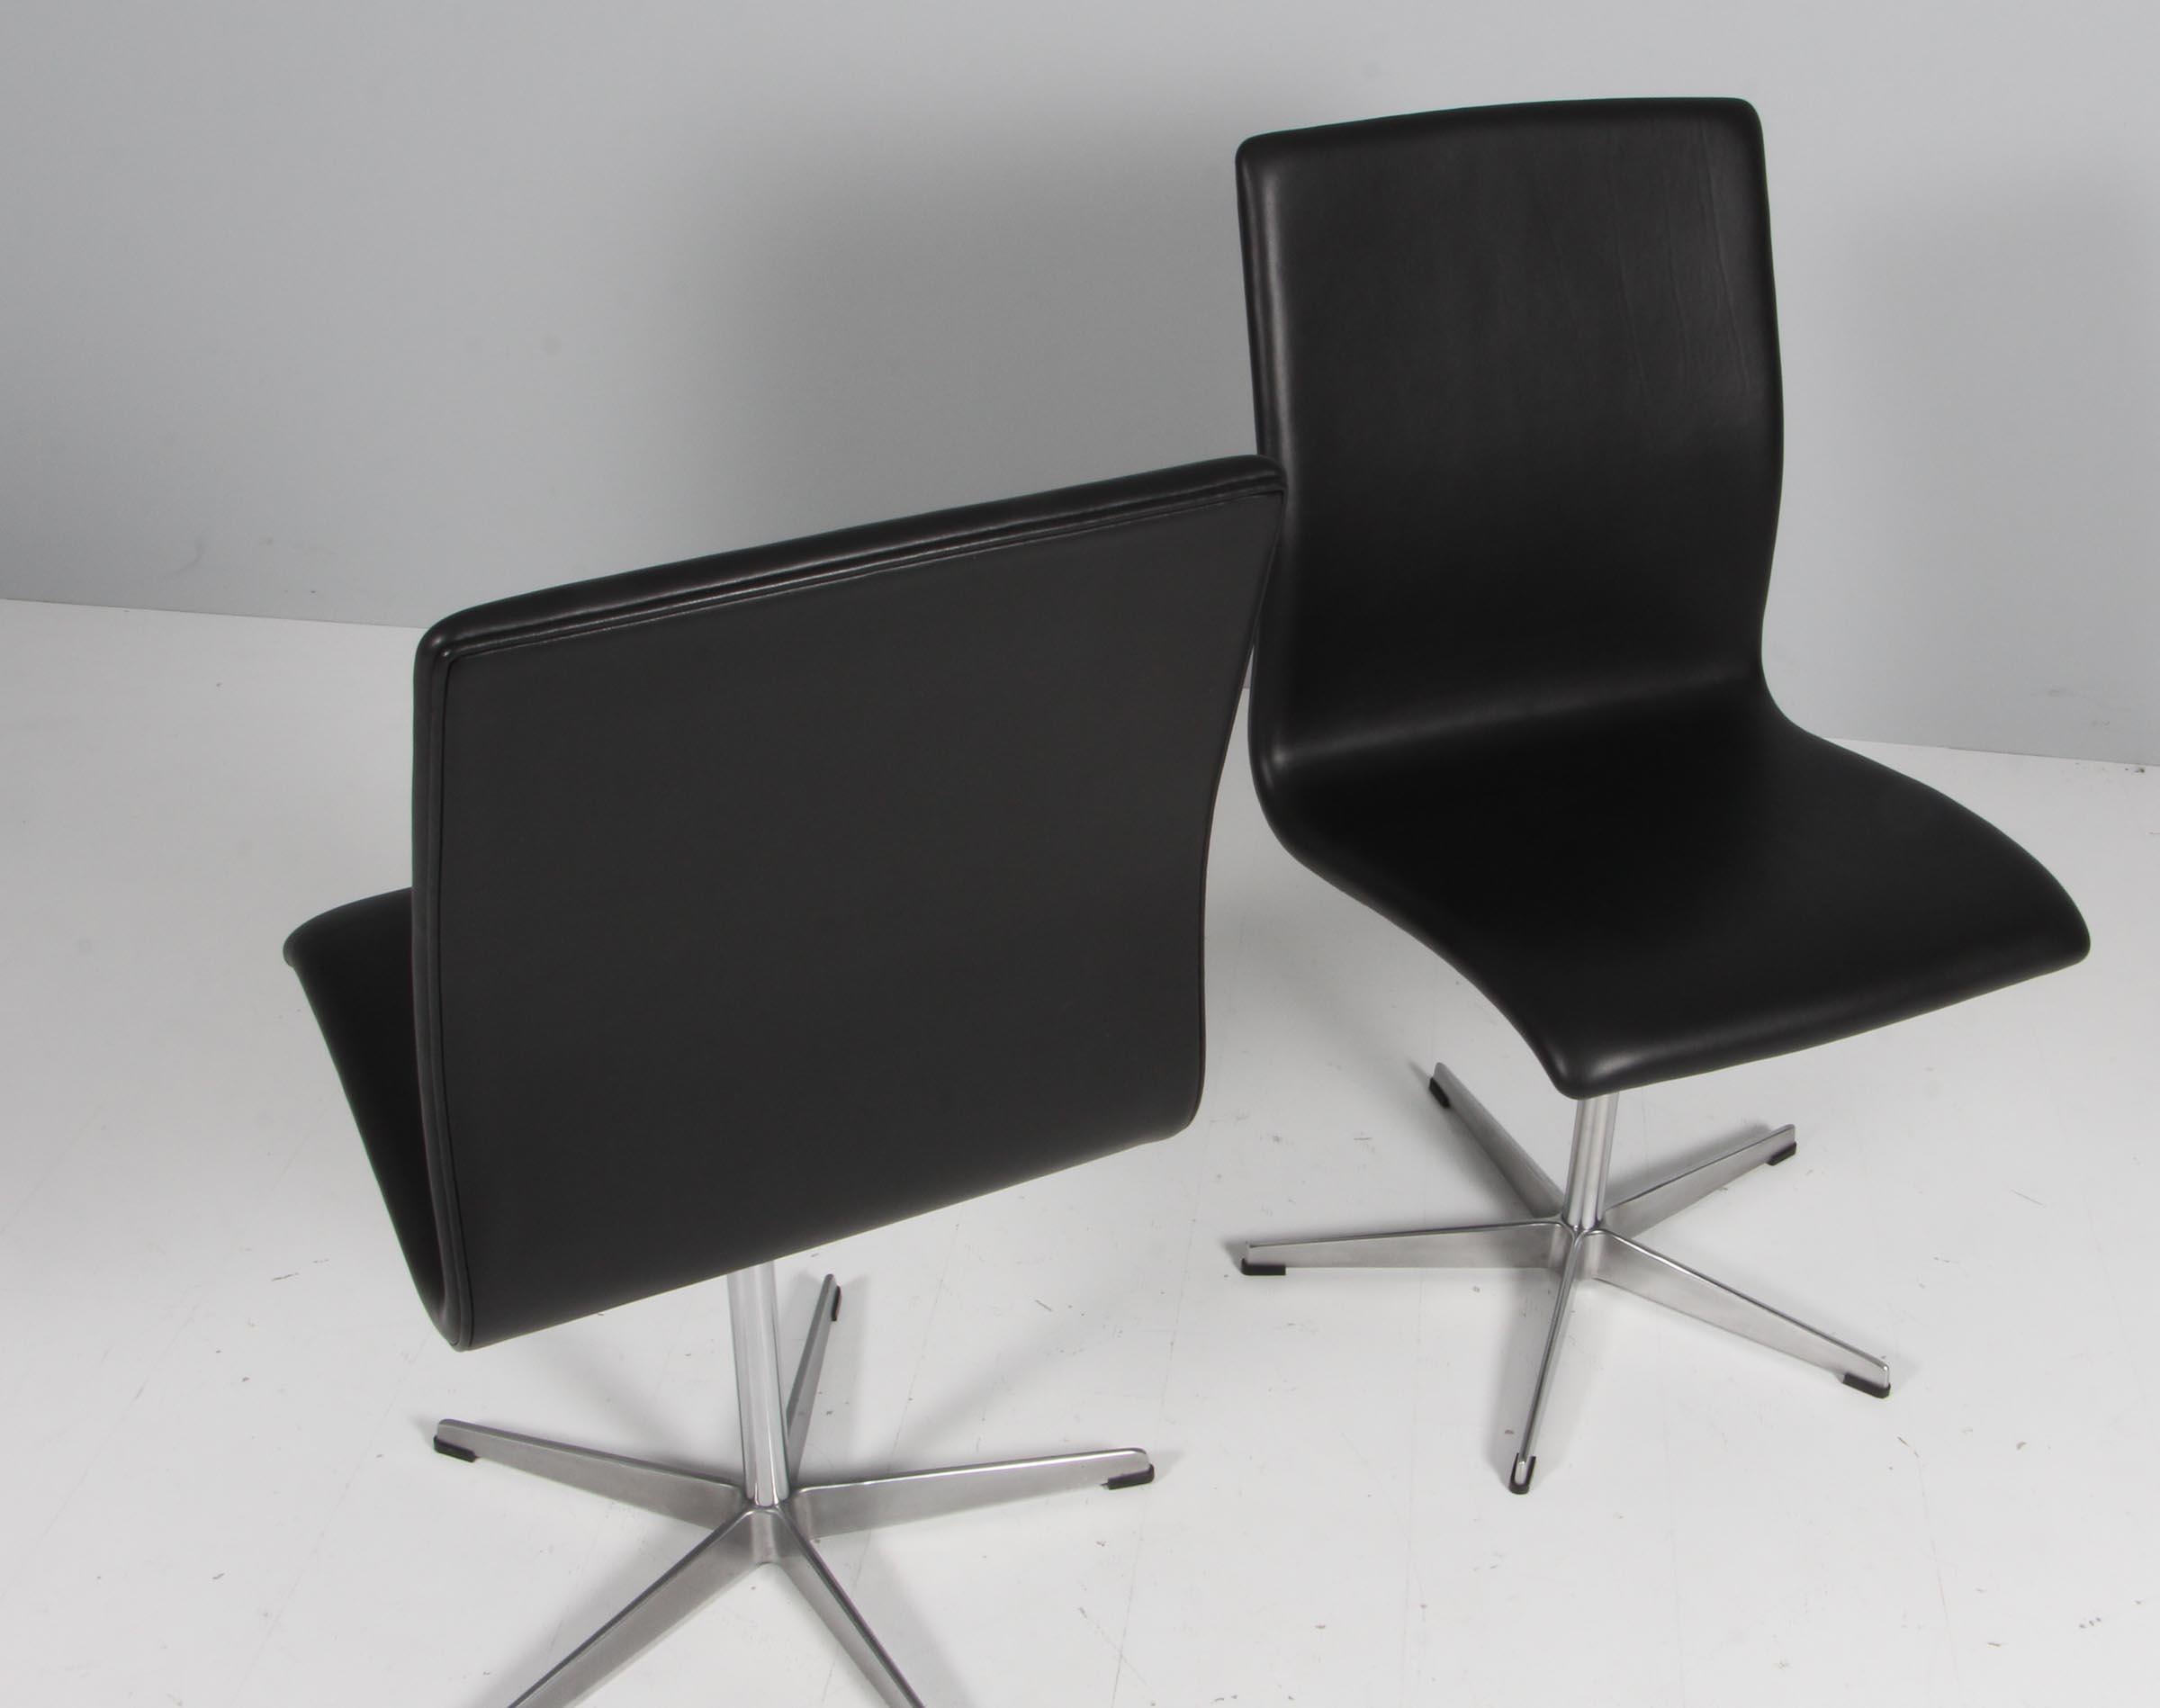 Arne Jacobsen Oxford Stuhl mit Fünfsternfuß aus Aluminium.

Neu gepolstert mit schwarzem Anilinleder

Hergestellt von Fritz Hansen.

Originalentwurf für die Universität Oxford.